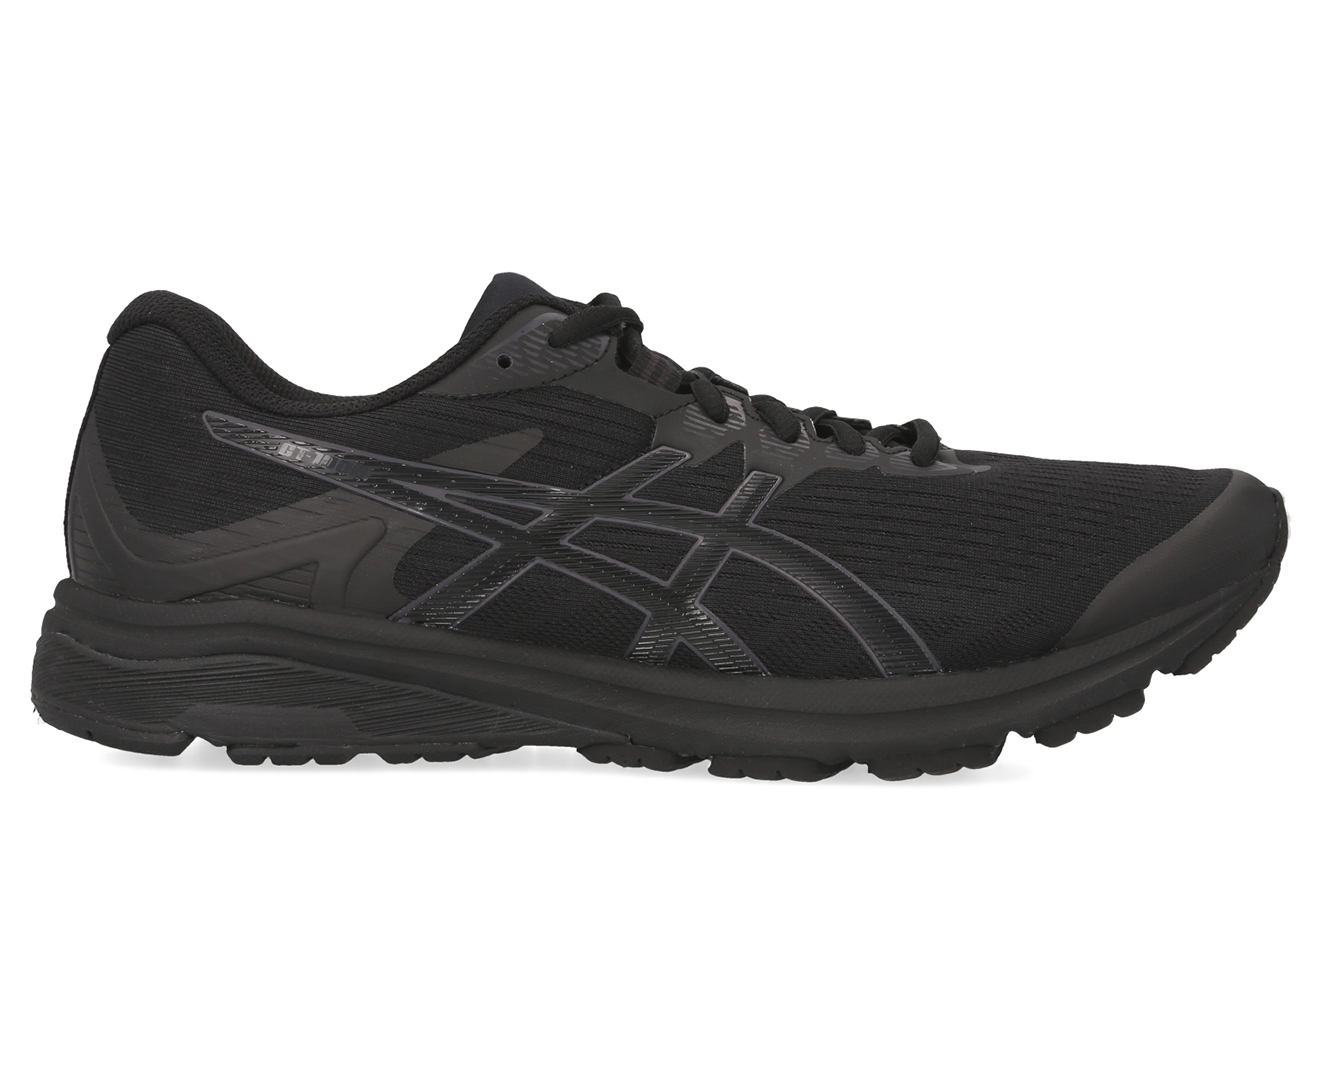 ASICS Men's GT-1000 8 Running Shoes - Black | Www.catch.co.nz, www ...